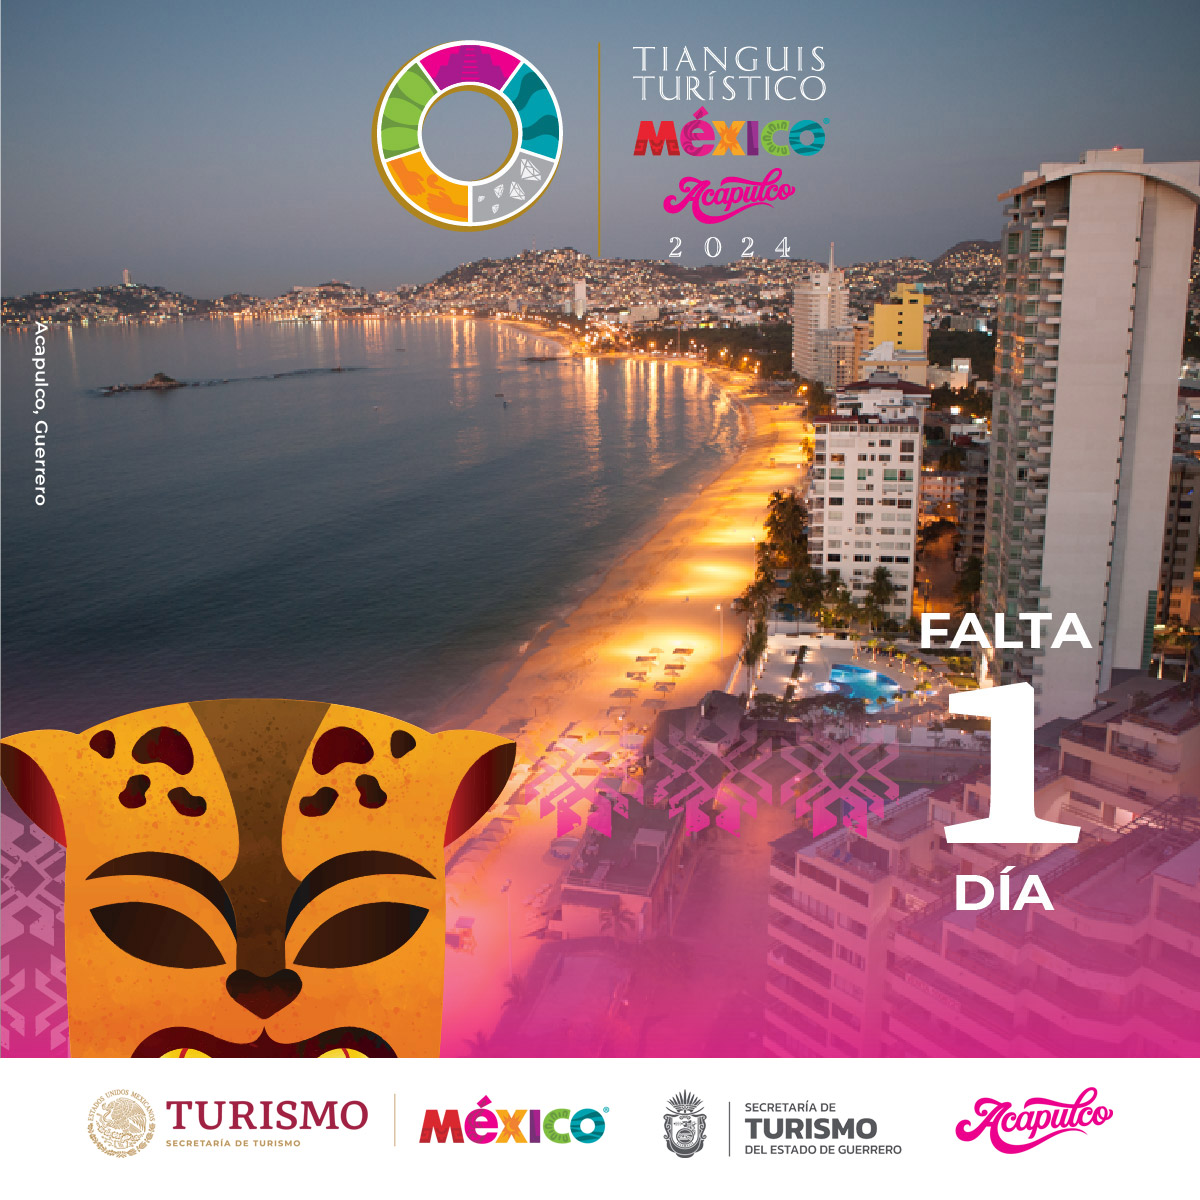 ¡Mañana comienza el #TianguisTurístico! 🕺💃🥳 ¡#Guerrero ya está listo para recibir a toda la familia turística en el #TianguisTuristico2024! 👏 No te pierdas los seminarios virtuales, premiaciones y más actividades que tenemos preparadas para la 48 edición de este gran evento